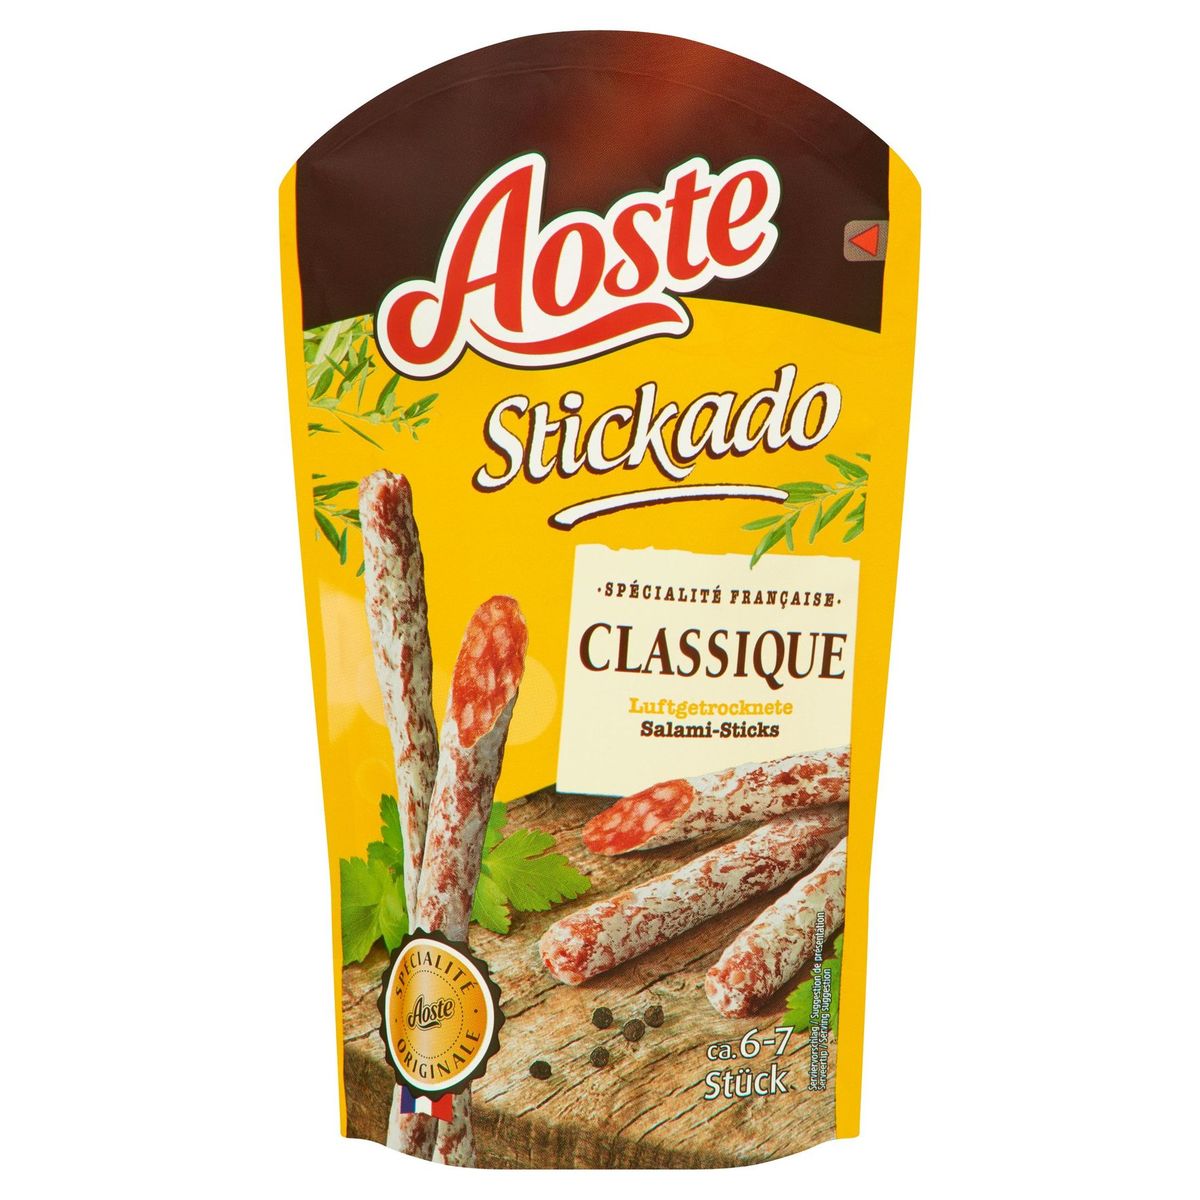 Aoste Stickado Classique Salami-Sticks 70 g